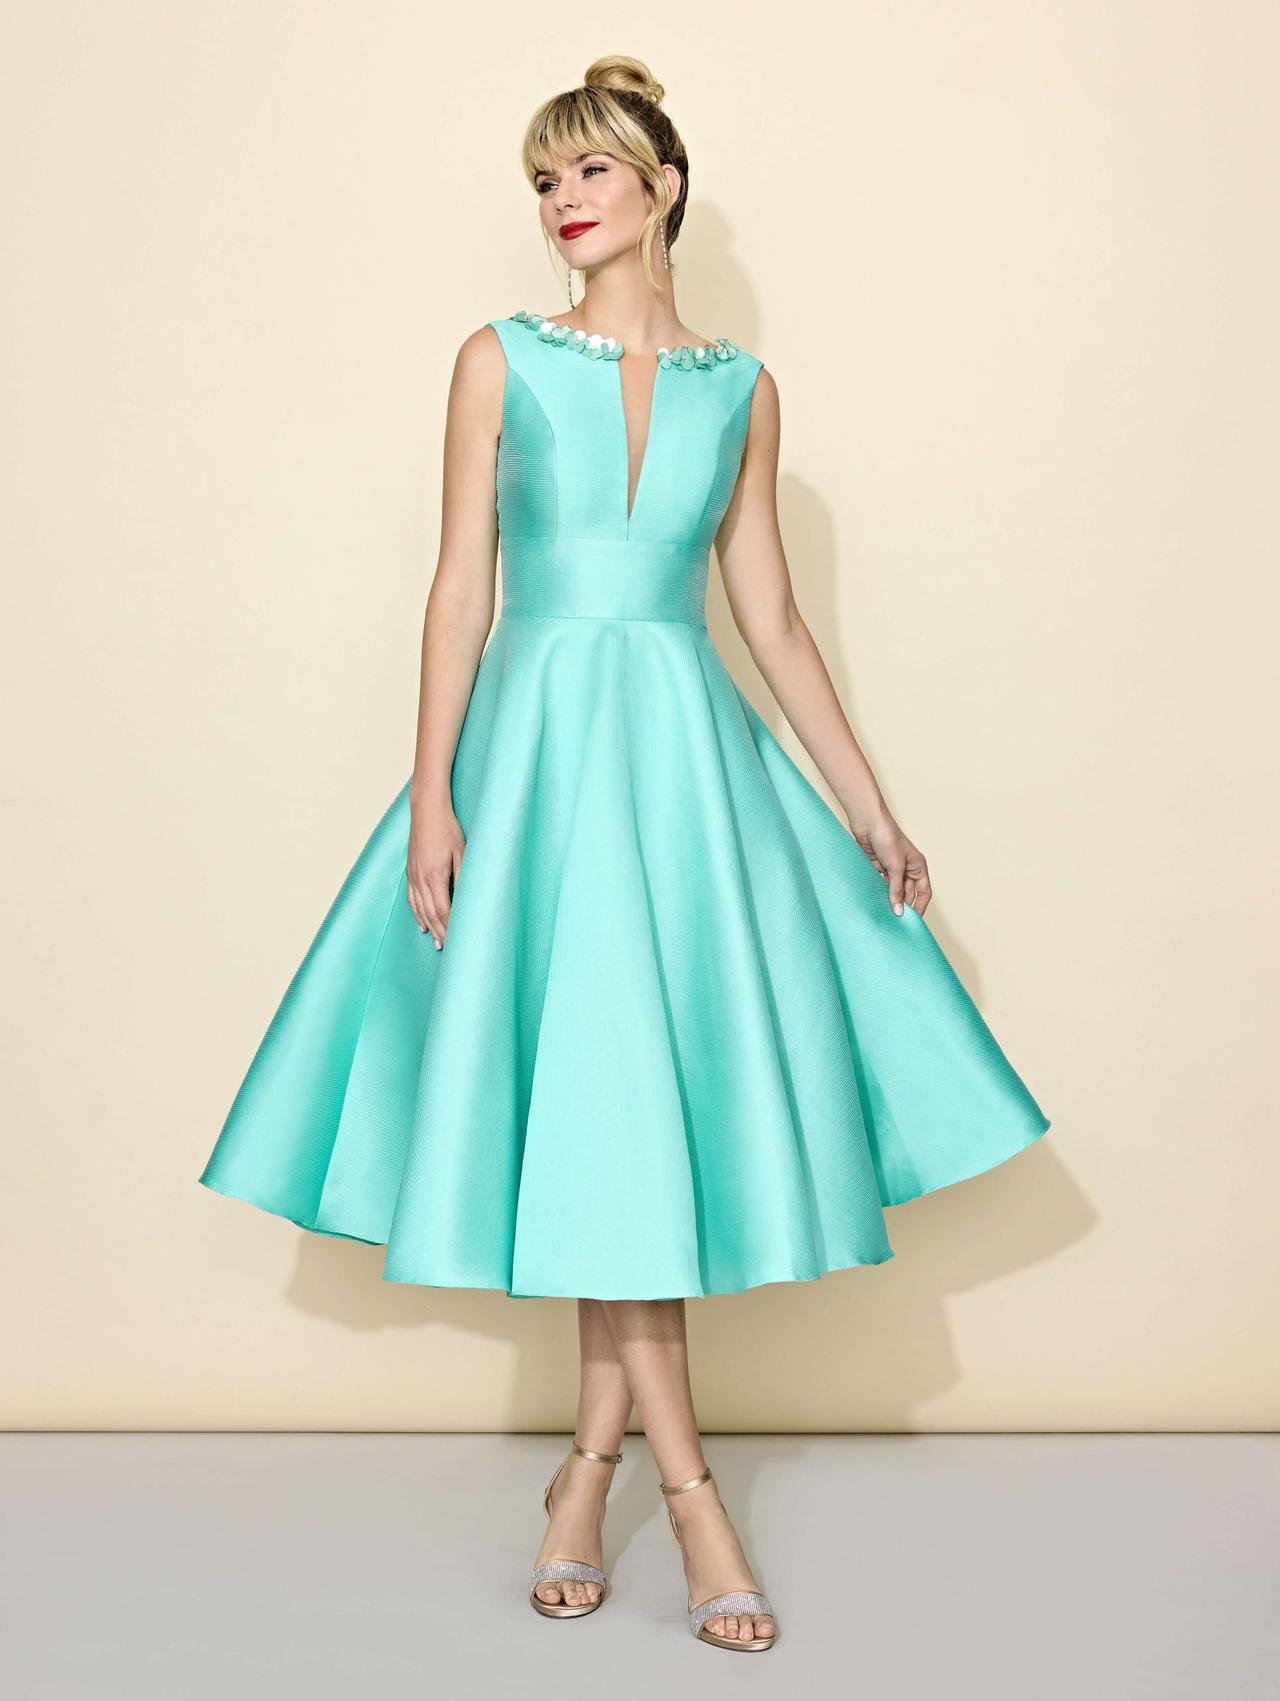 mayoria sagrado Gaseoso 222 vestidos de fiesta para señoras: las ideas más elegantes para una boda